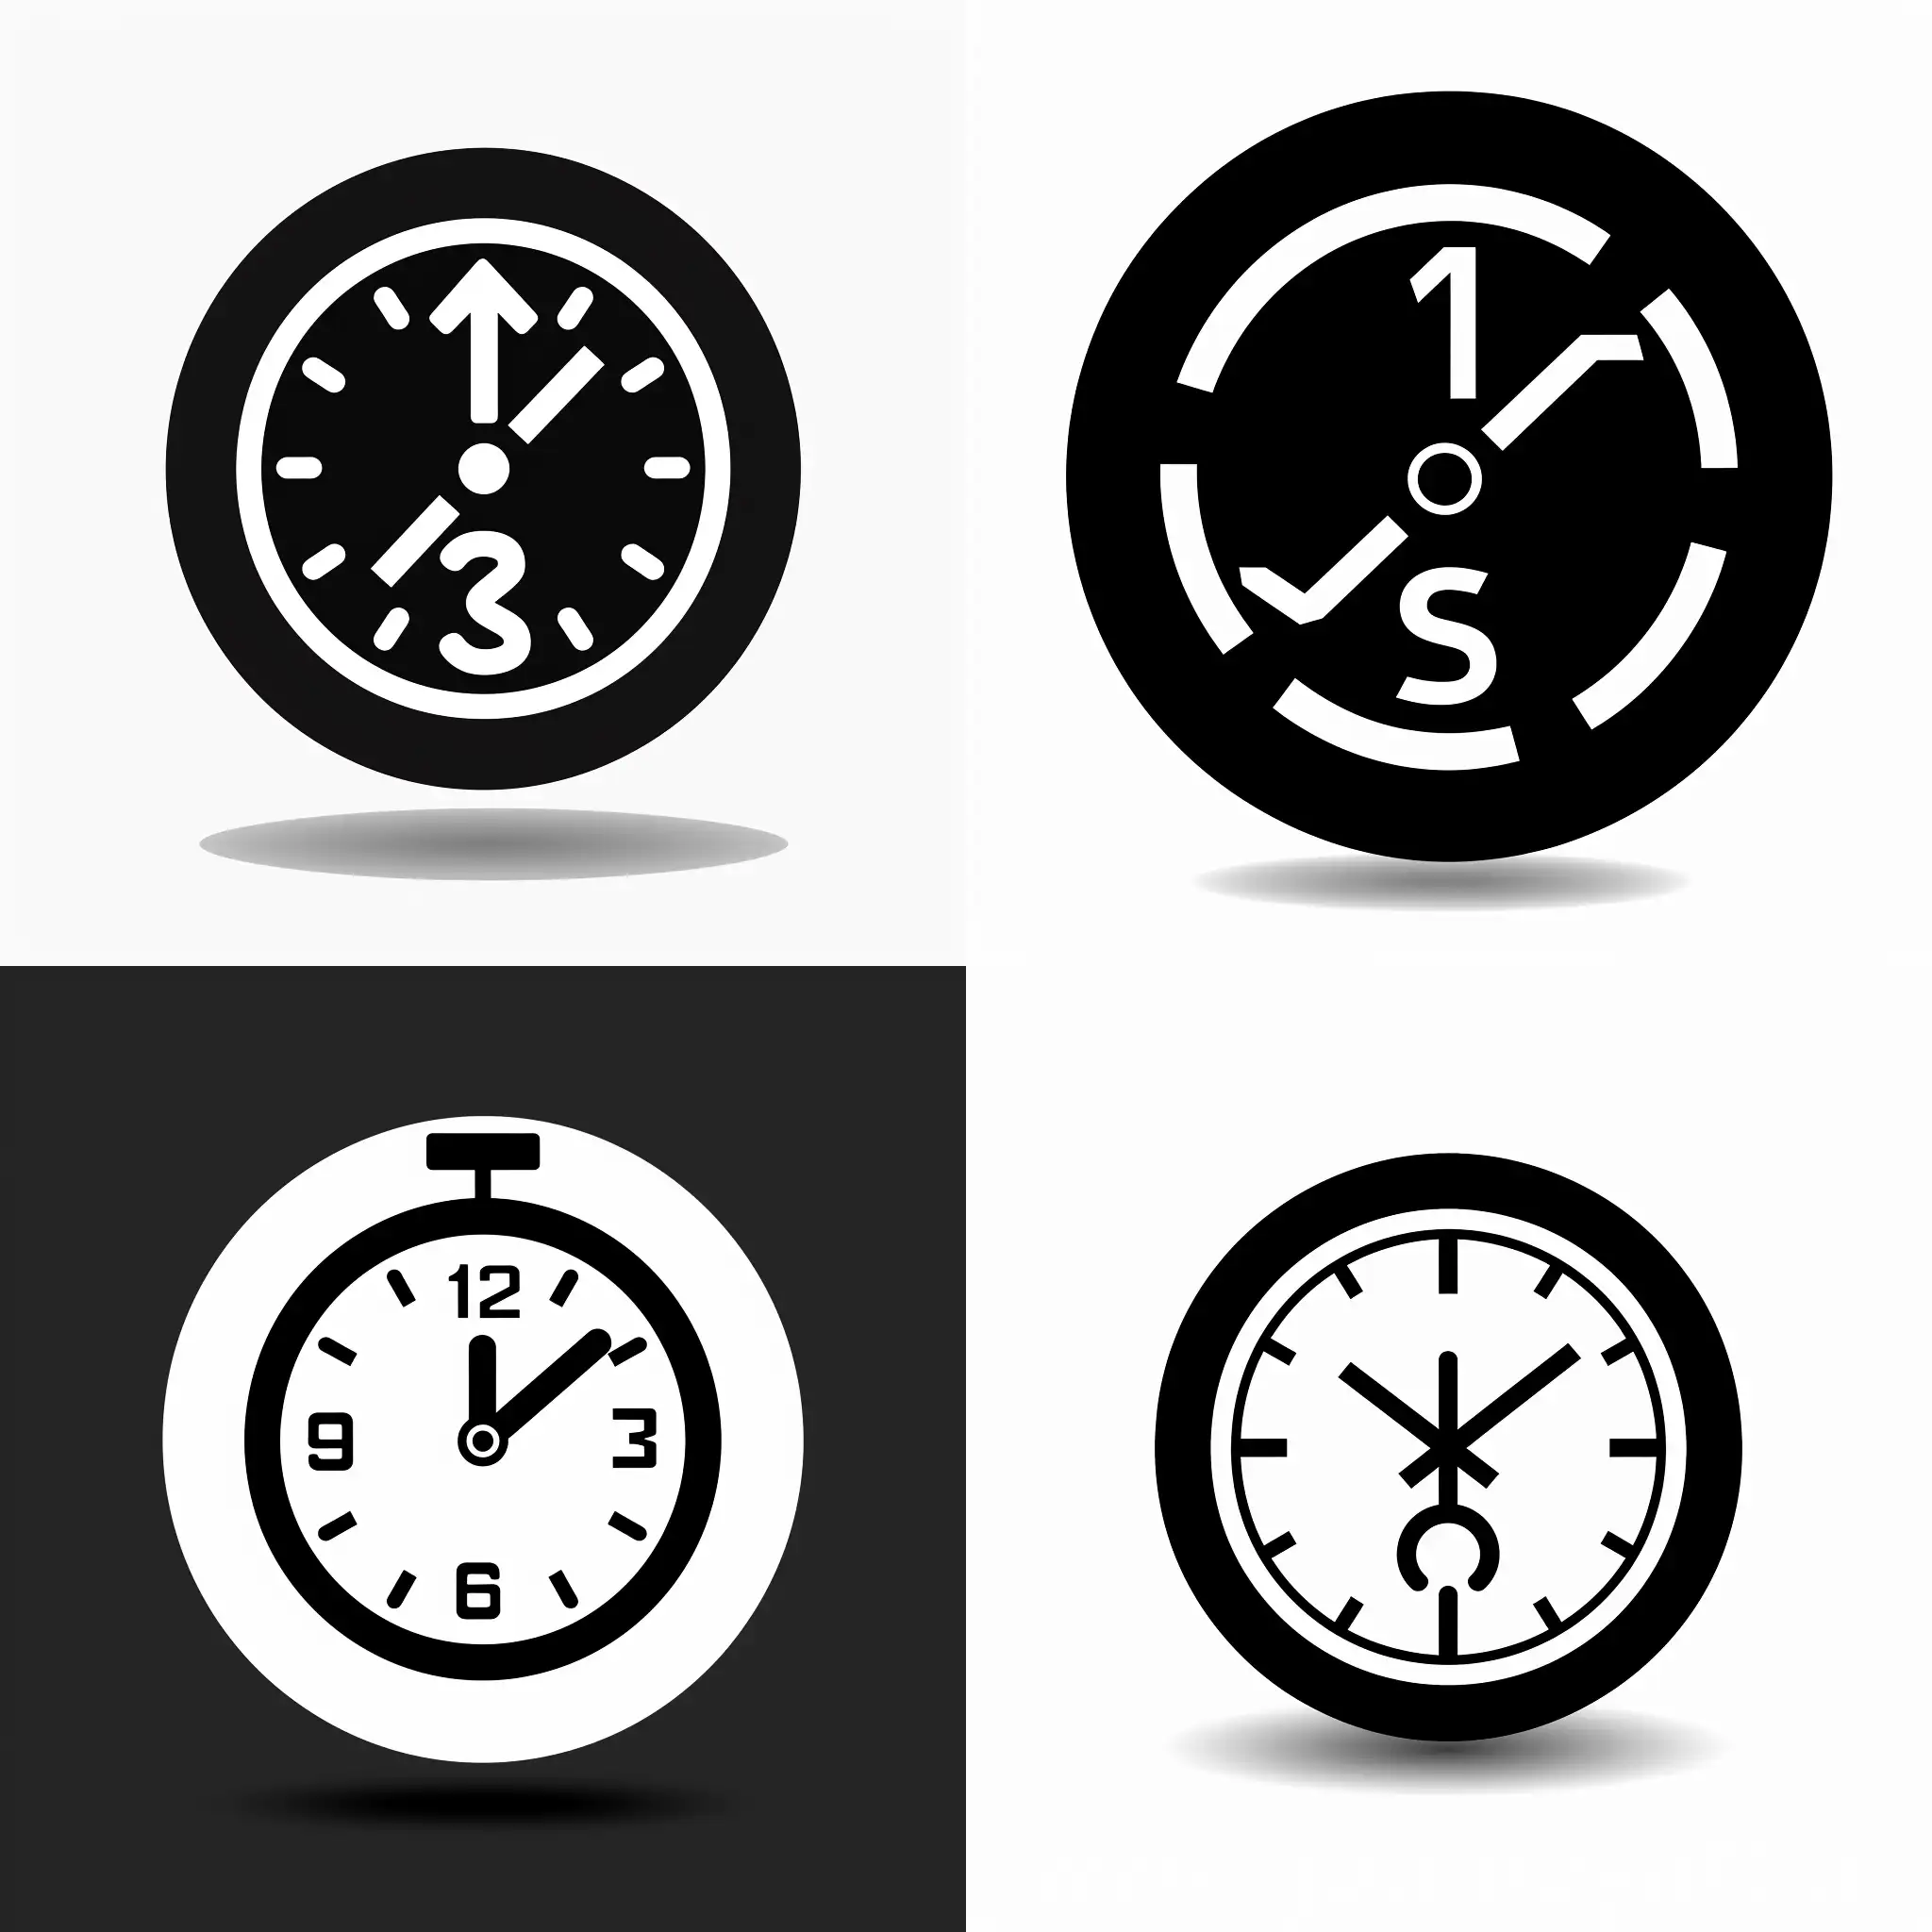 Иконка логотип черно-белое время приготовления sref http://ibcm.biz/wp-content/uploads/2015/09/ID-100339179.jpg